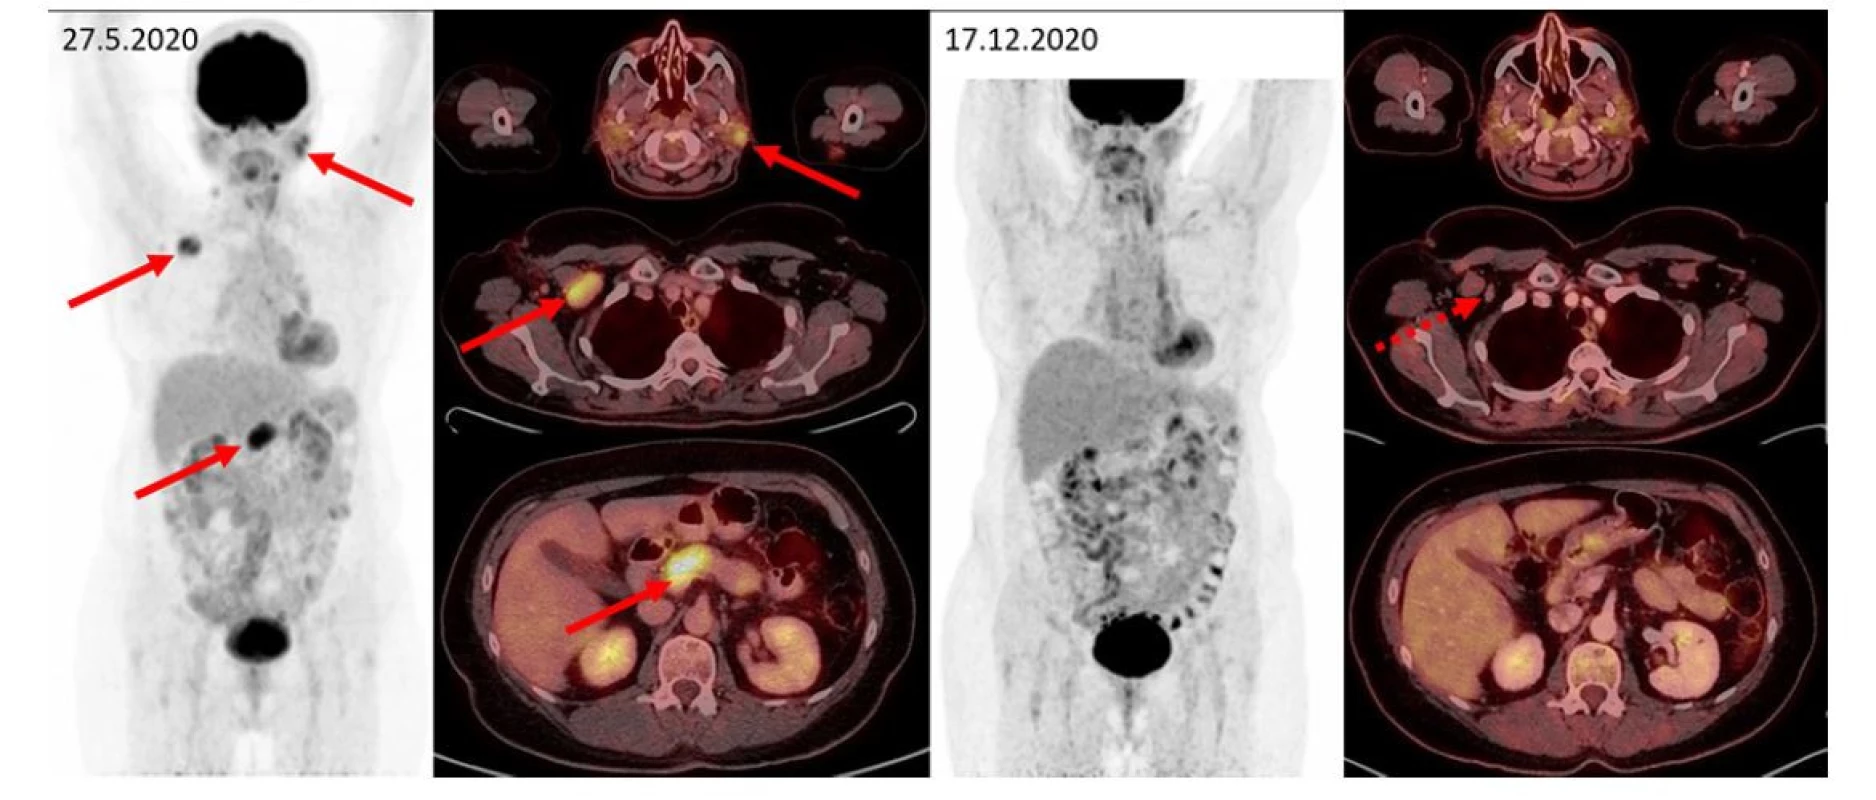 F–FD6 PET/CT vyšetření u pacientky s bolestmi v dolní polovině břicha a zvětšením pankreatu. Šipkami jsou označeny metabolicky aktivní infiltrace
příušních slinných žláz, zvětšená aktivní uzlina vpravo pod prsními svaly, infiltrace přechodu hlavy a těla pankreatu. Další méně výrazná ložiska
(vlevo v gll. submandibularis, uzlinách na krku, kaudě pankreatu) jsou patrna na MIP zobrazení, ale nejsou označena. Tato metabolicky aktivní ložiska
při kontrolním vyšetření zanikají, drobné reziduum bez zvýšené metabolické aktivity je patrné jen vpravo subpektorálně. Pacientka měla dva cytologické
odběry z pankreatu, jeden vyšel jako zánět, druhý jako adenocarcinom. Vymizení infiltrace po léčbě rituximabem, cyklofosfamidem a dexametazonem
potvrdilo etiologii v IgG4-RD a vyloučilo adenokarcinom pankreatu, který by na tuto léčbu nereagoval